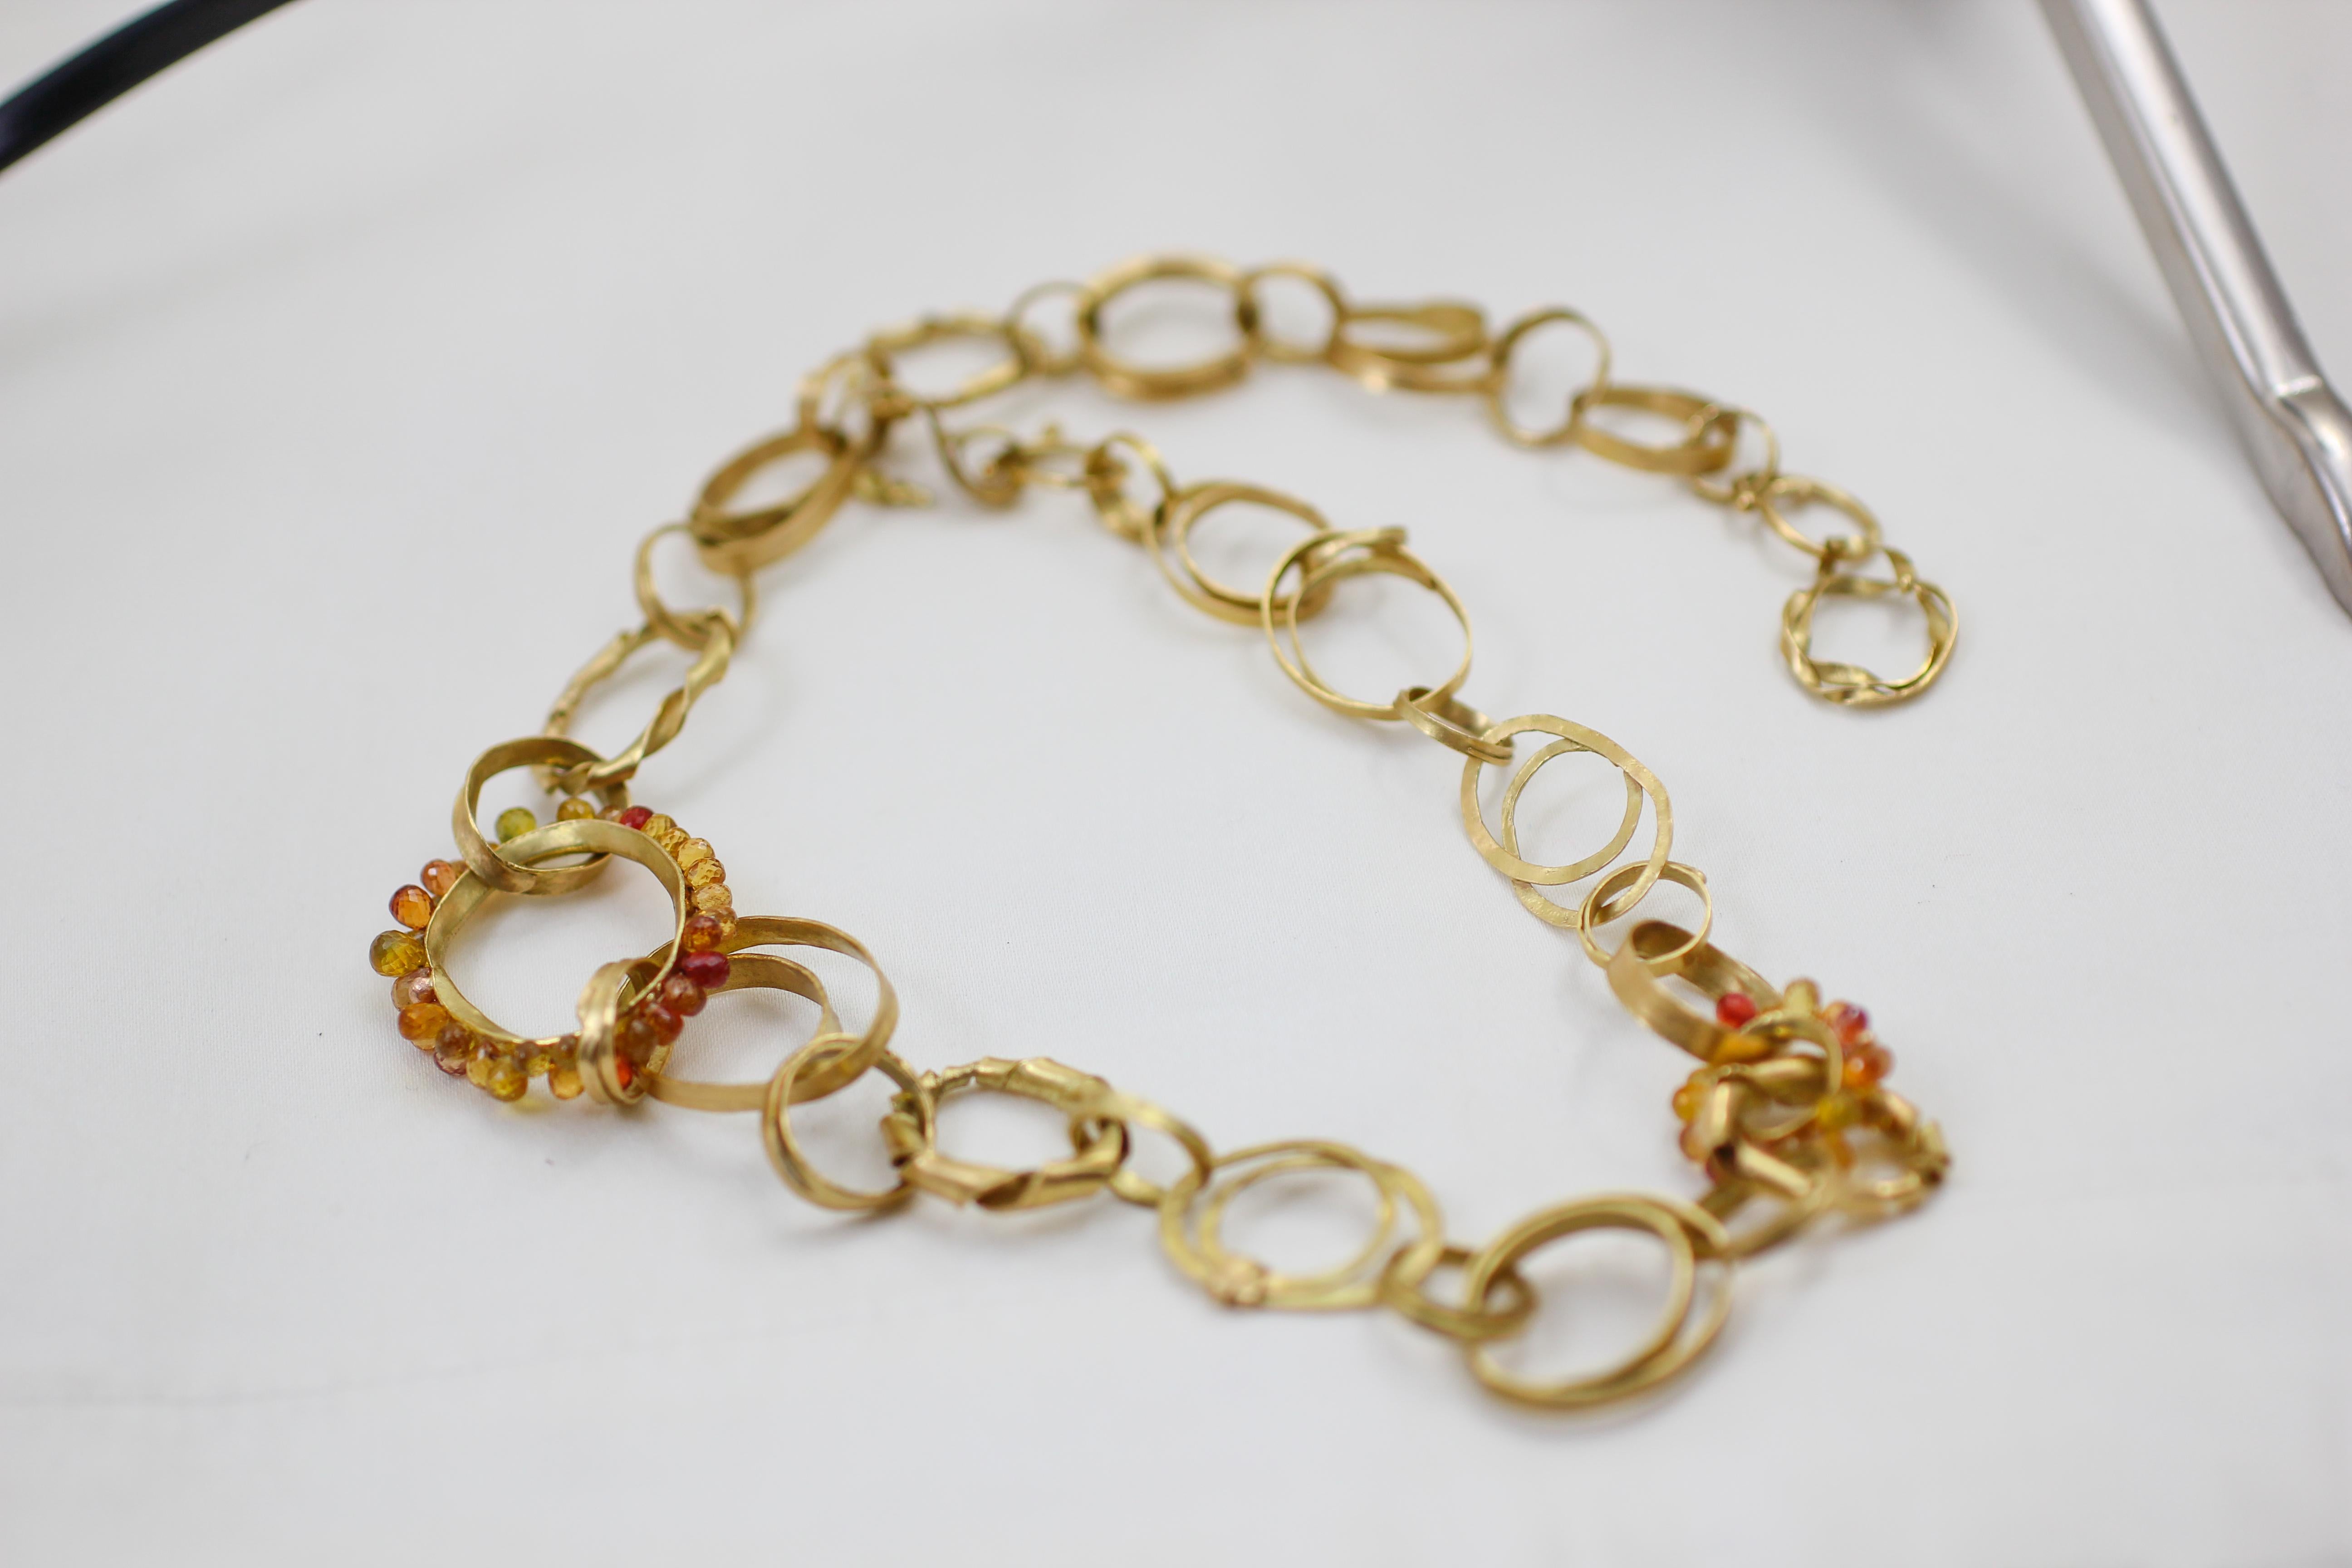 Die Jasmine Vine Necklace ist ein einzigartiges, handgefertigtes Halsband aus recyceltem 18-karätigem Gold, das durch perlenbesetzte Saphirglieder betont wird. Organisch und farbenfroh. Ein Blickfang zu jeder Jahreszeit. Er ist aus